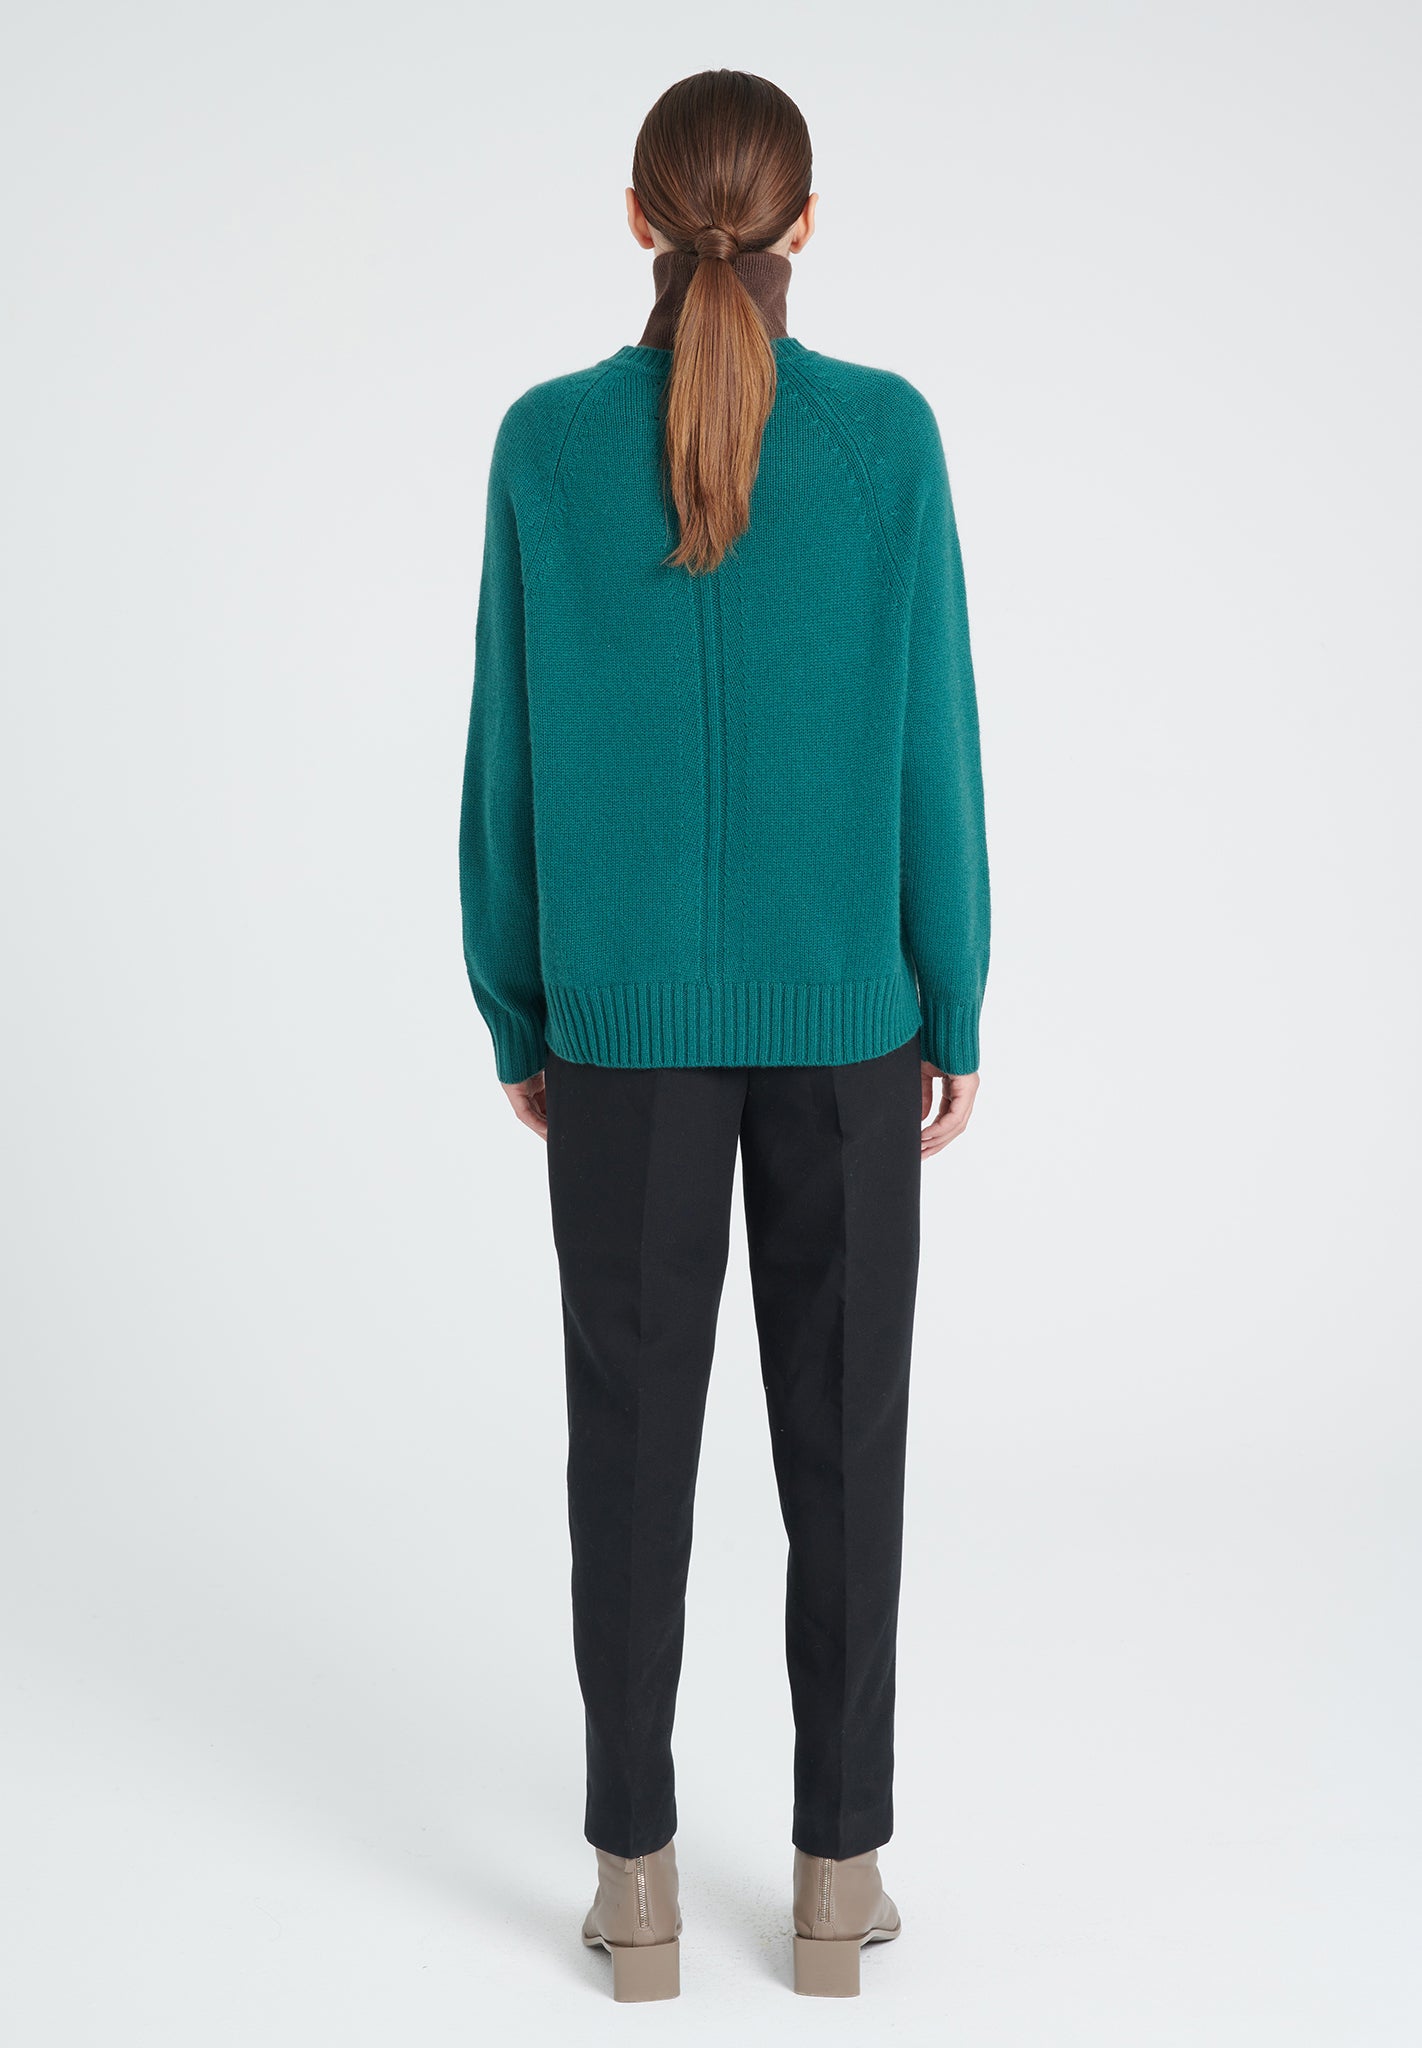 ZAYA 7 Round neck sweater with raglan sleeves in dark green 6-thread cashmere